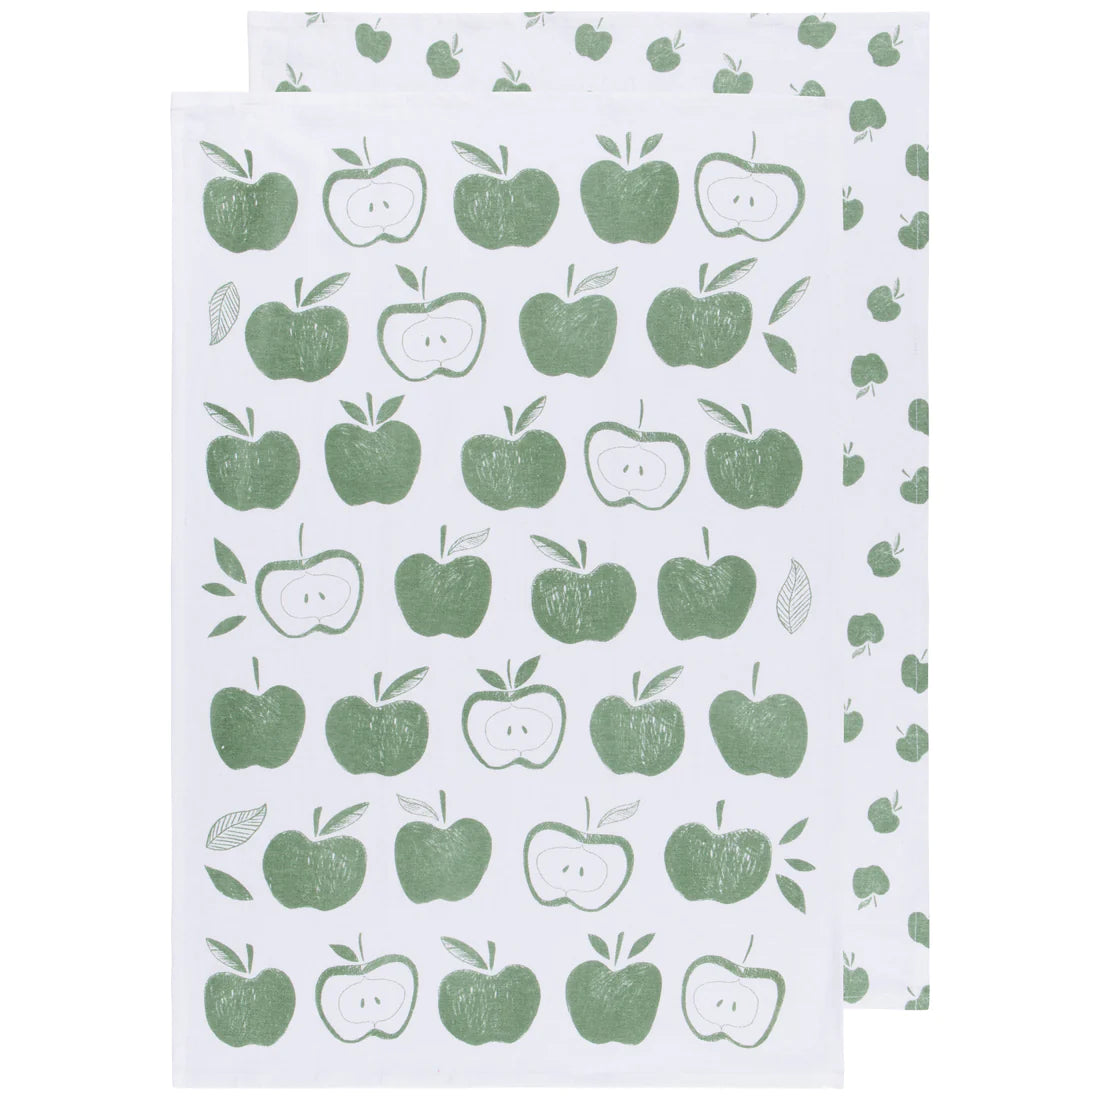 Tea Towels Floursack 100% Cotton - Set of 2 Apples Print Elm Green